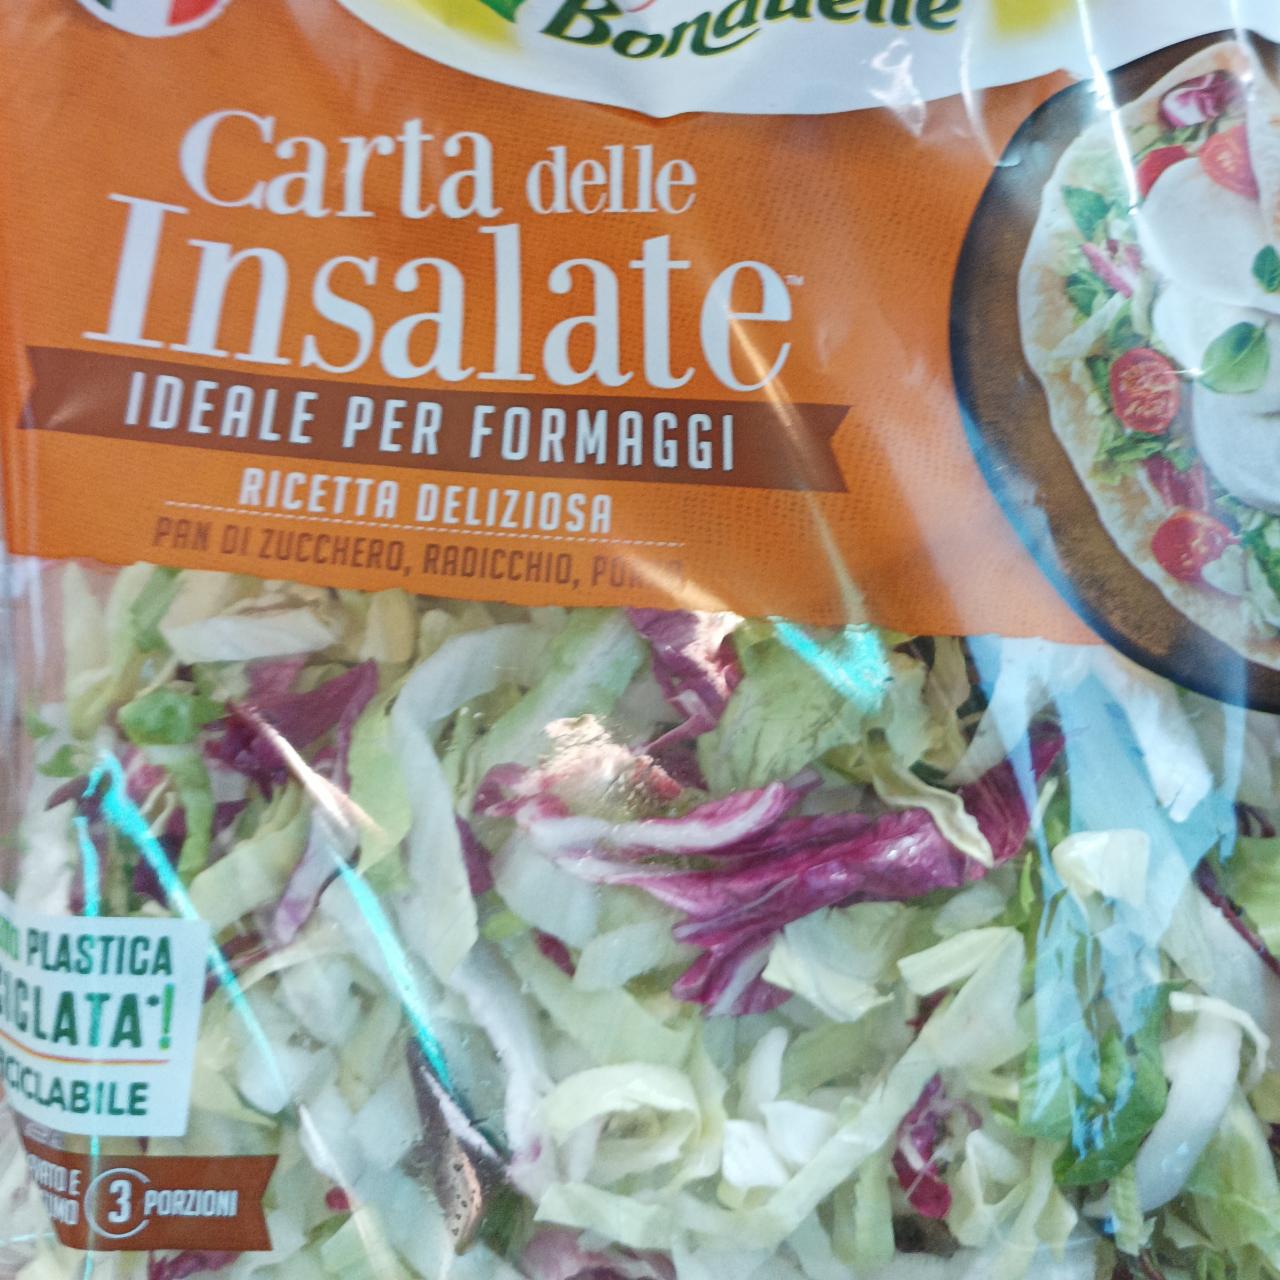 Fotografie - Carta delle insalate ricetta deliziosa Bonduelle